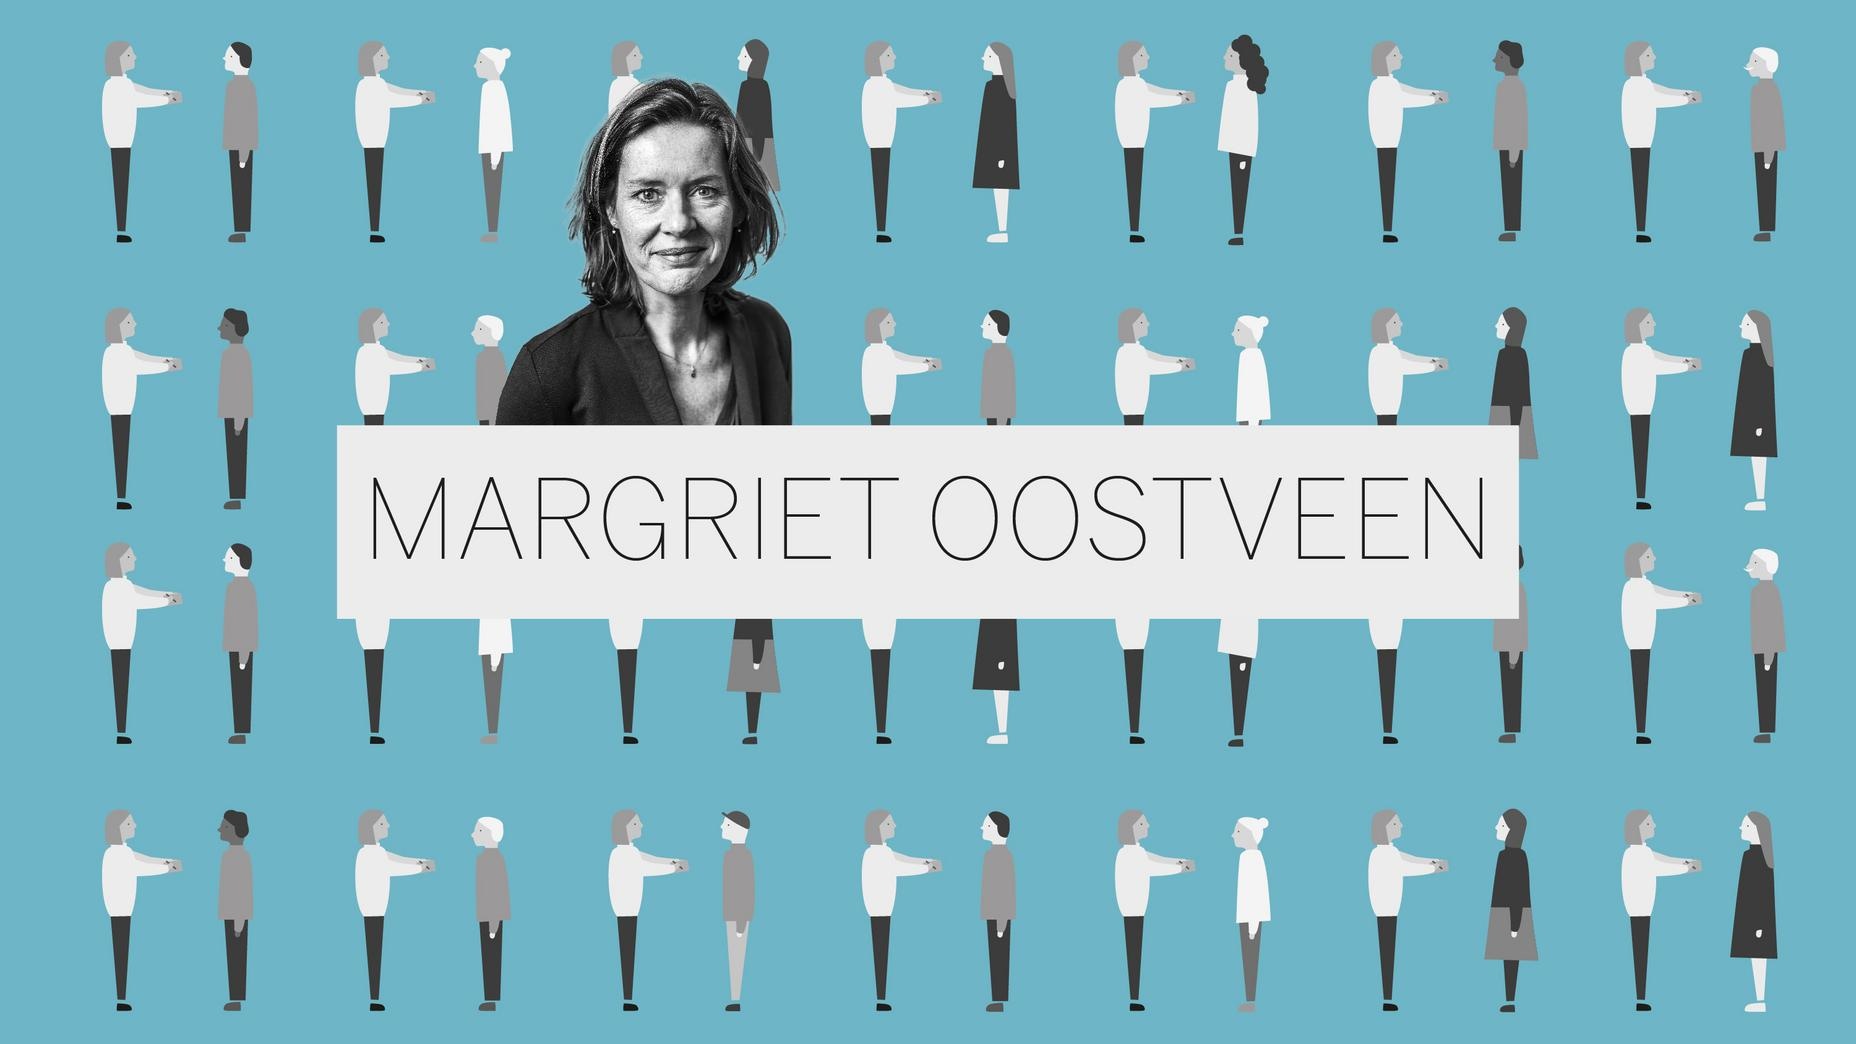 Margriet Oostveen in Leeuwarden